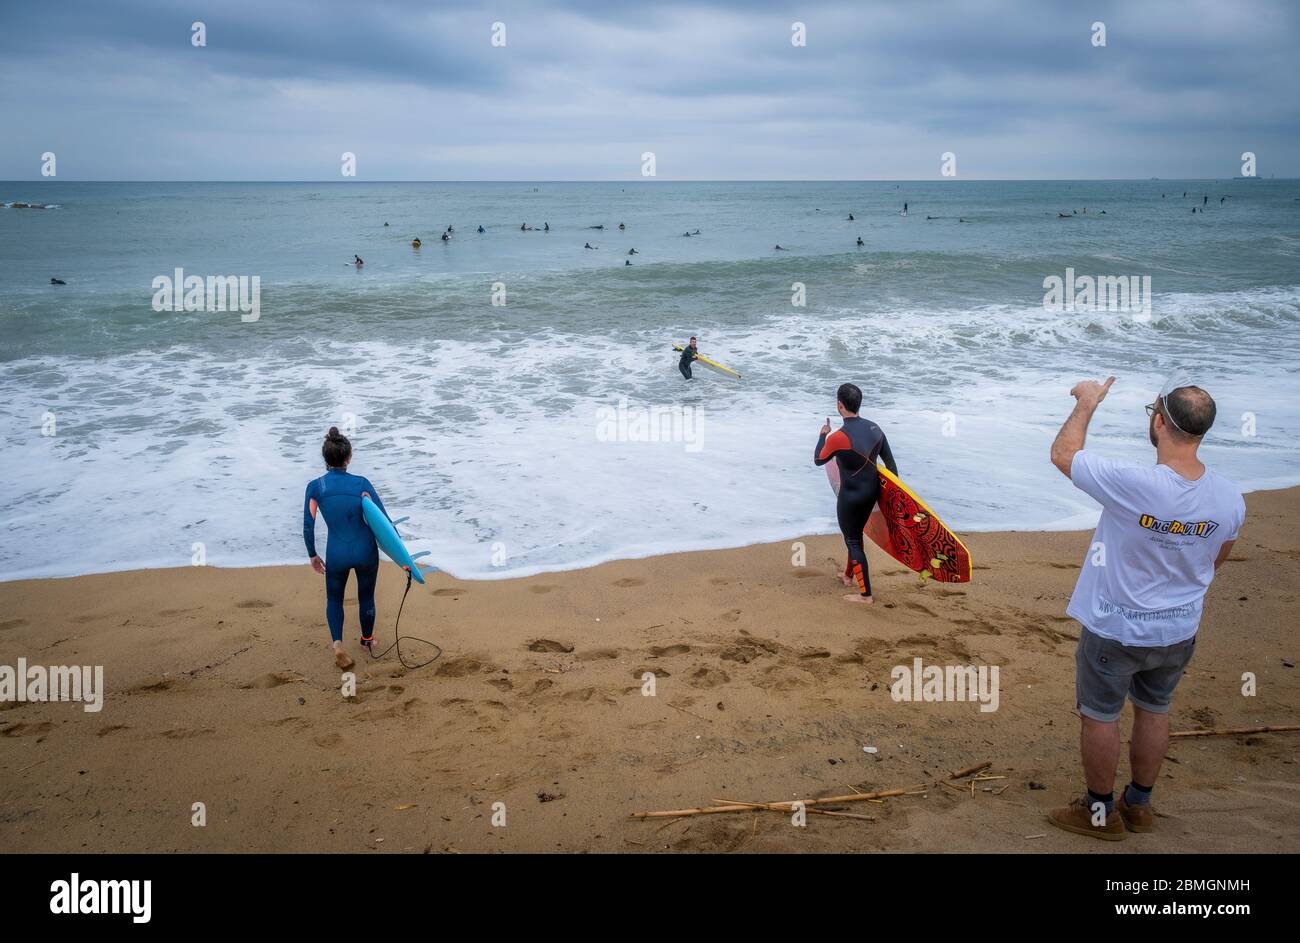 Deux surfeurs se préparent à entrer dans l'eau pendant les créneaux prévus pour la pratique du sport en raison de la pandémie du coronavirus.la phase zéro permet à Barcelone de rouvrir les plages pour le sport individuel réglementé dans les tranches horaires en raison de la contagion de Covid-19. Banque D'Images